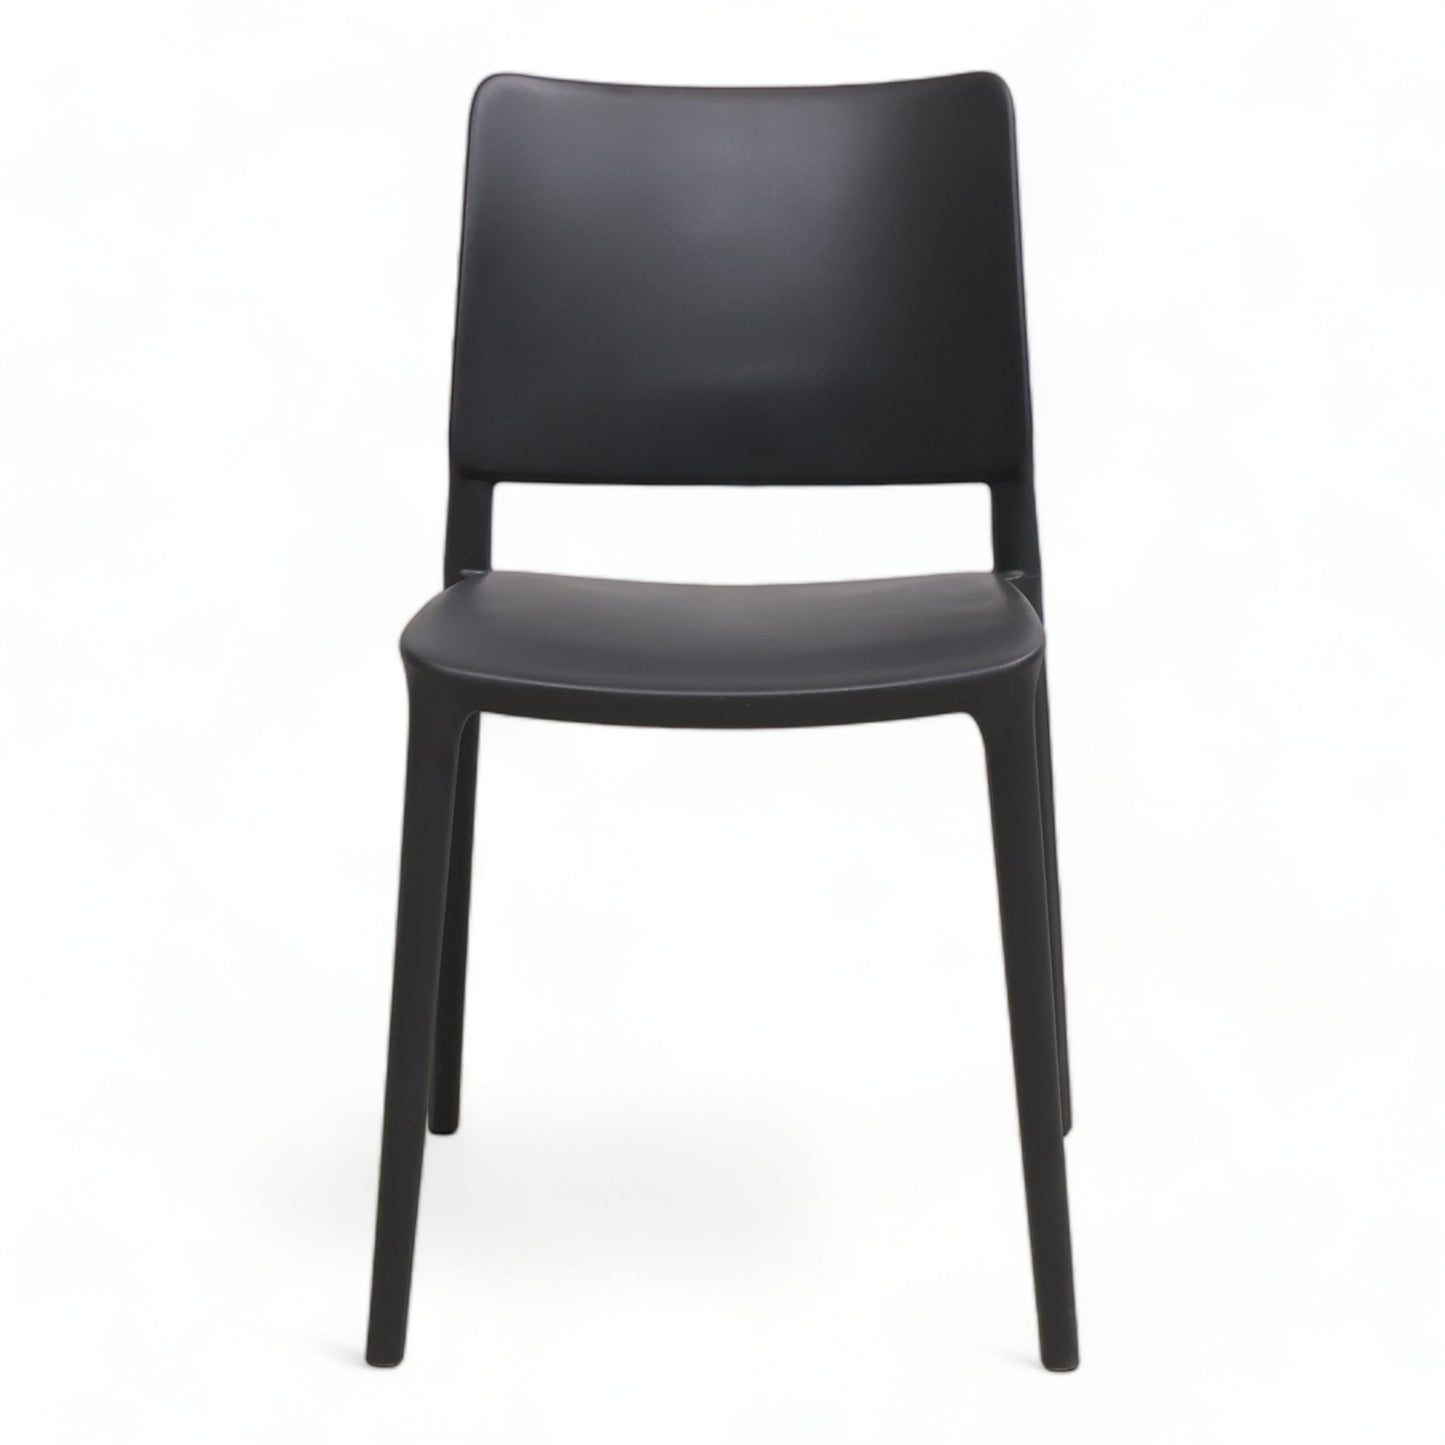 Nyrenset | Moderne spisestoler i mørk grå farge